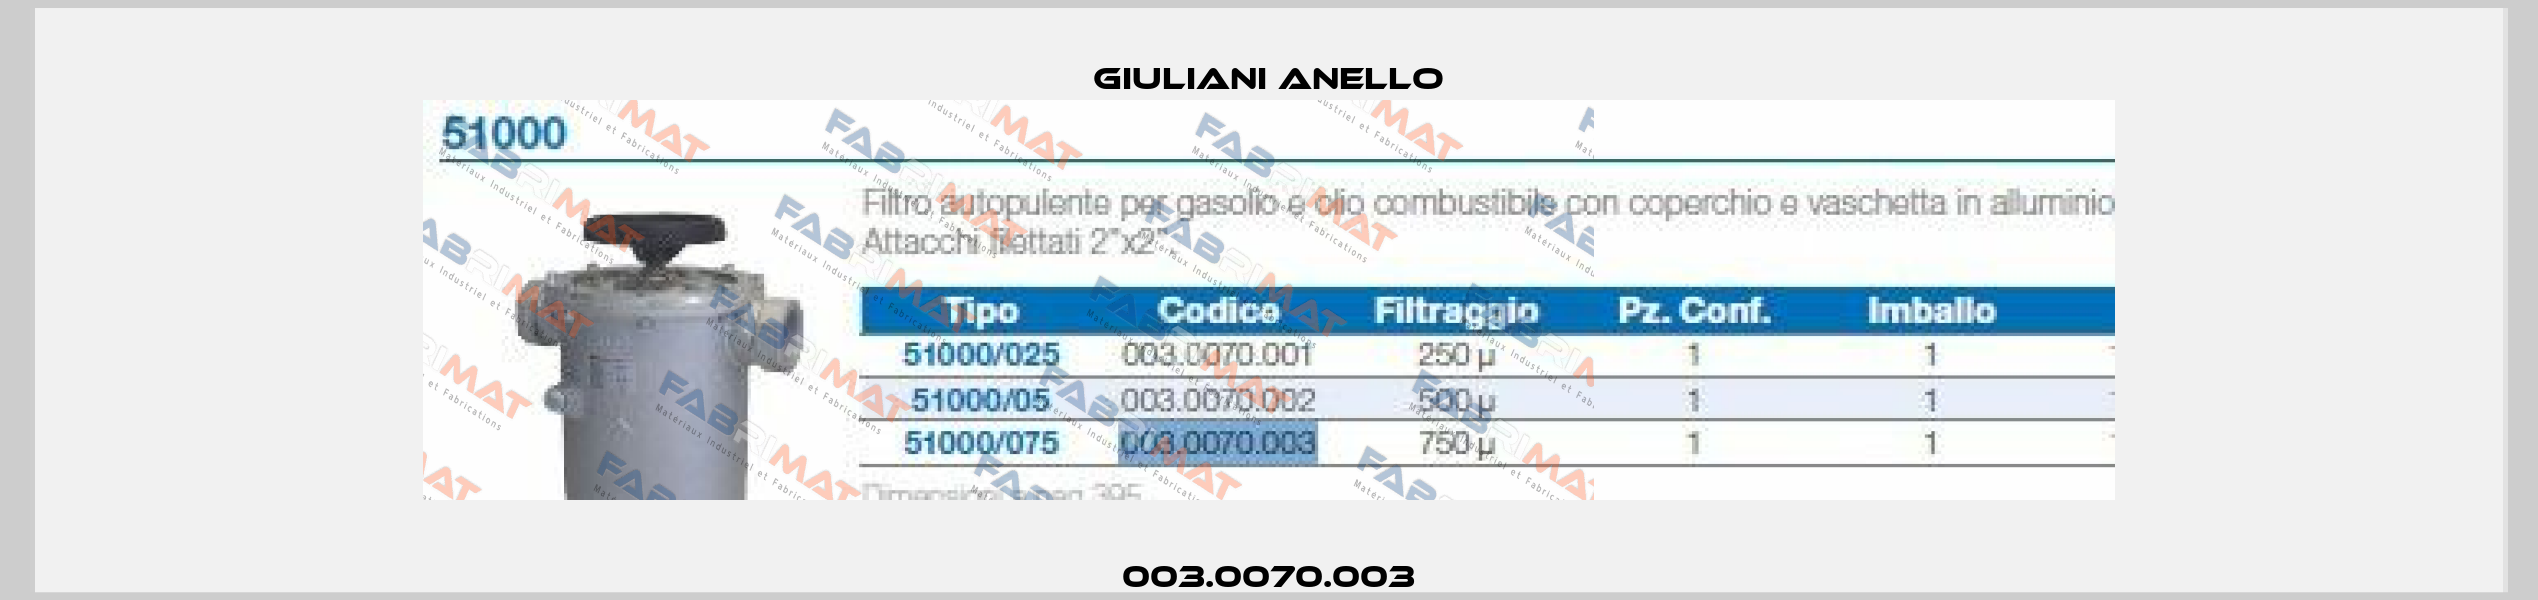 003.0070.003 Giuliani Anello